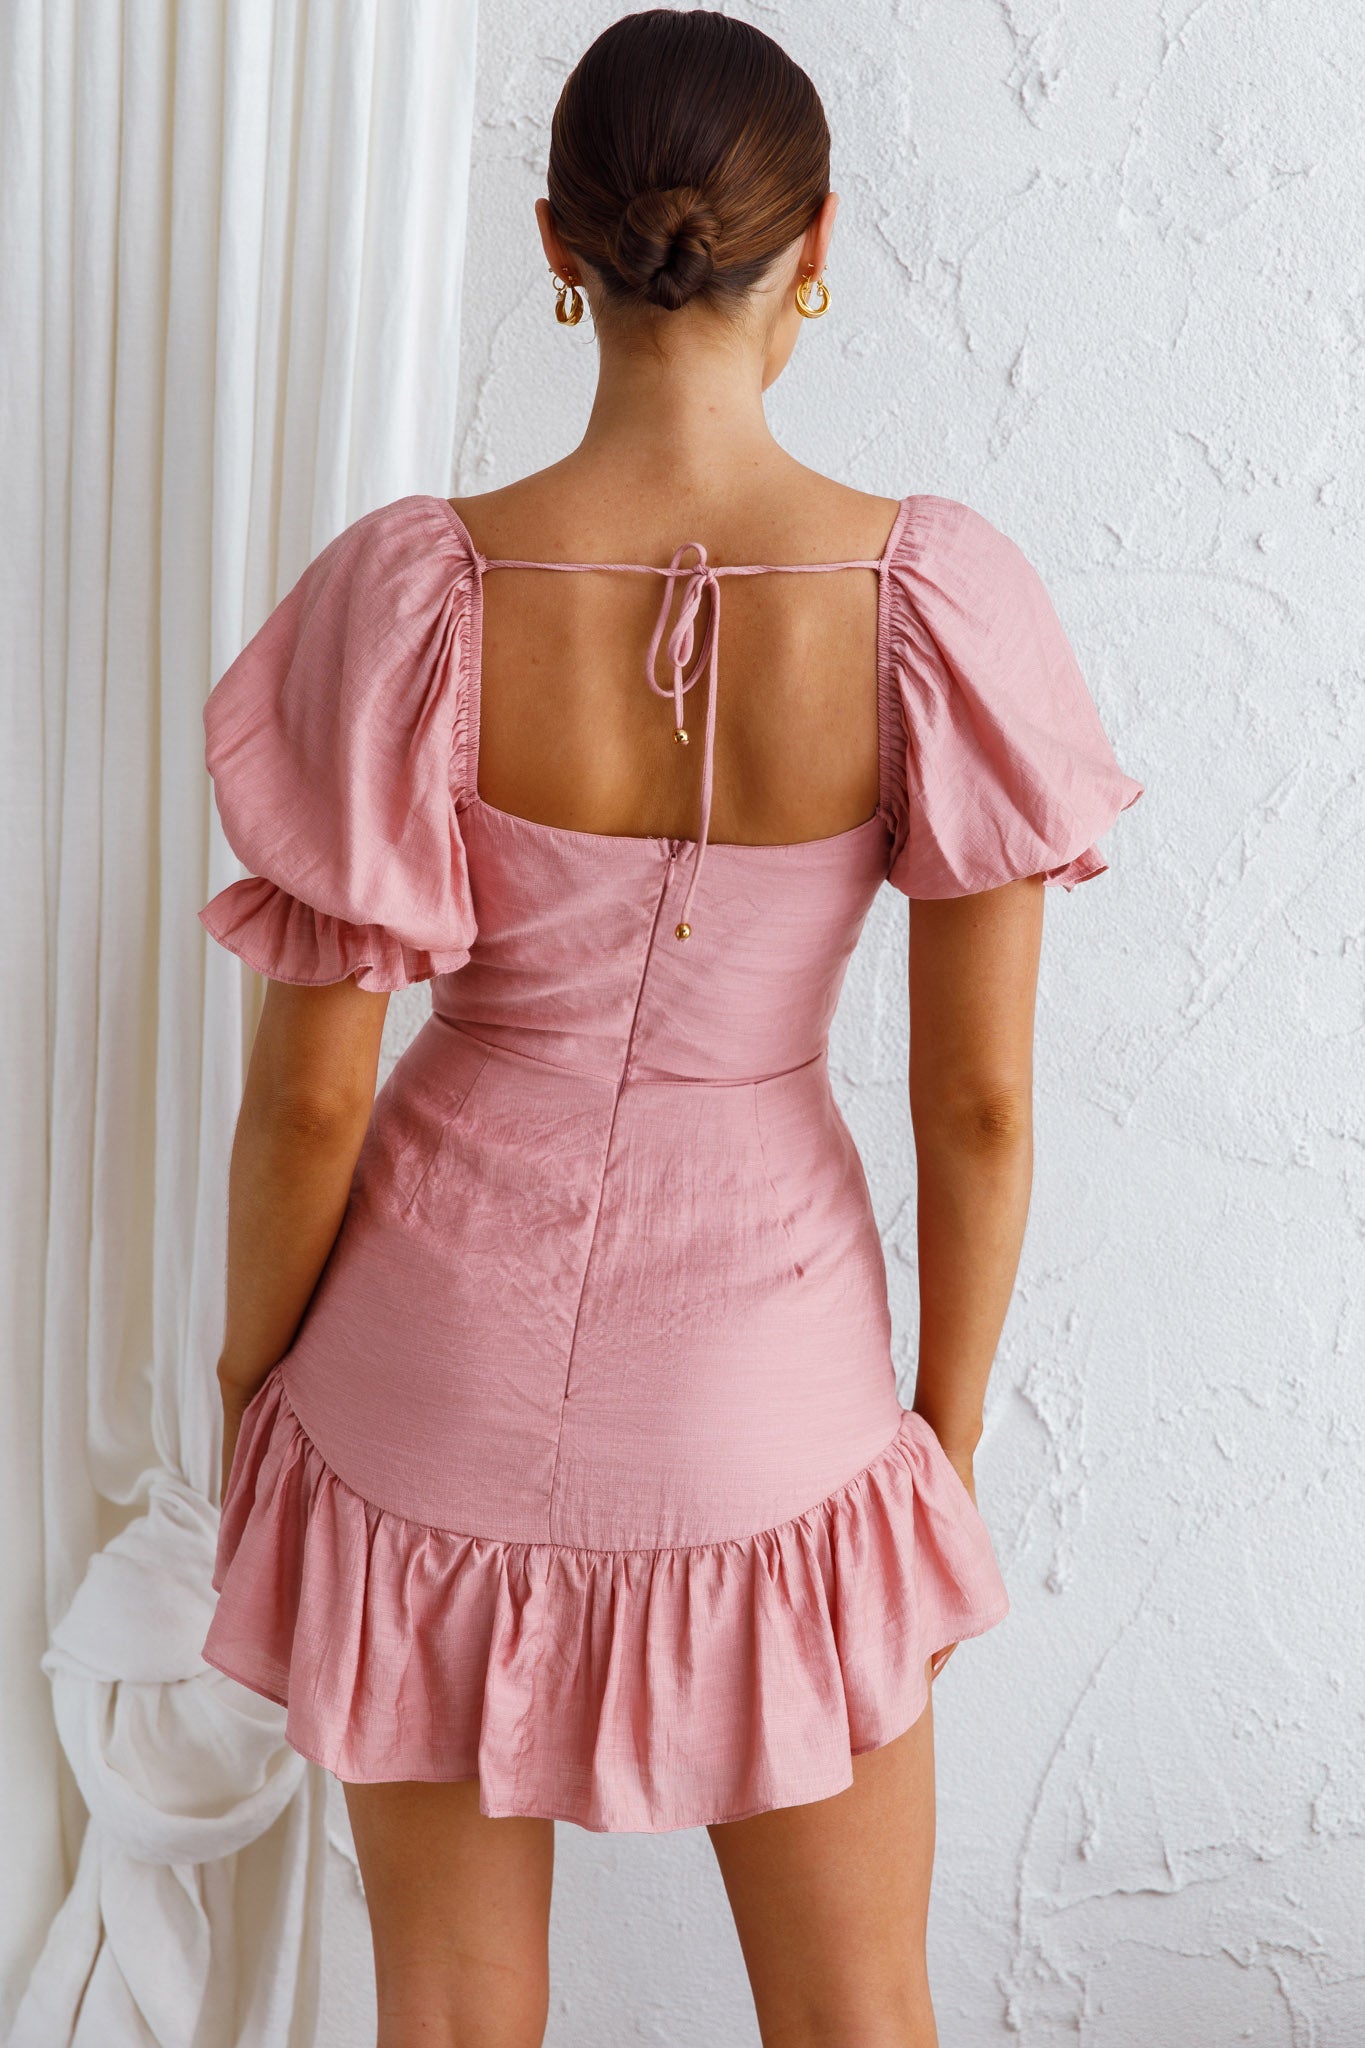 Baby Frill Dress - blush pink